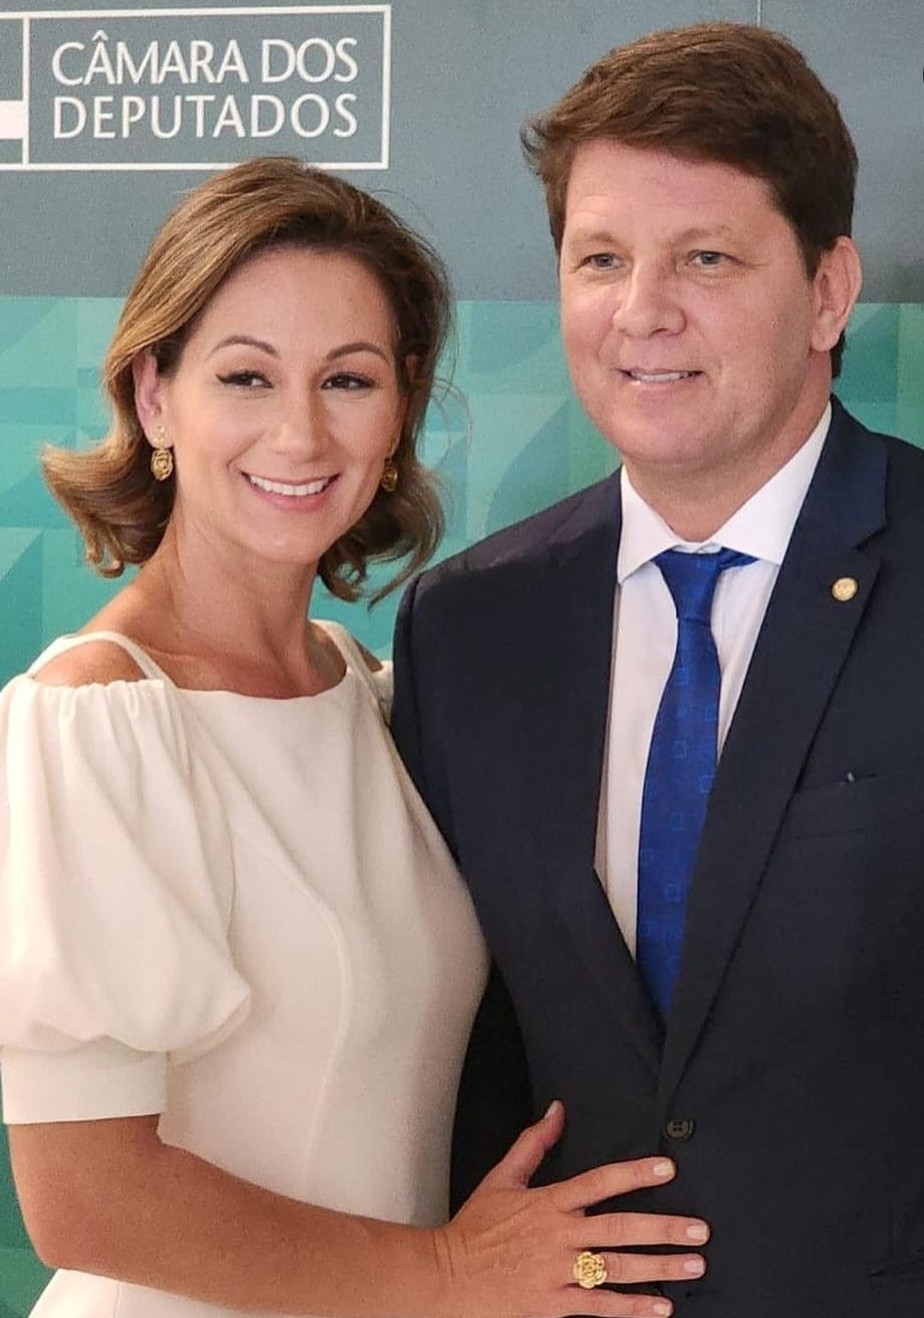 Mário Frias e esposa durante cerimônia de posse na Câmara dos Deputados